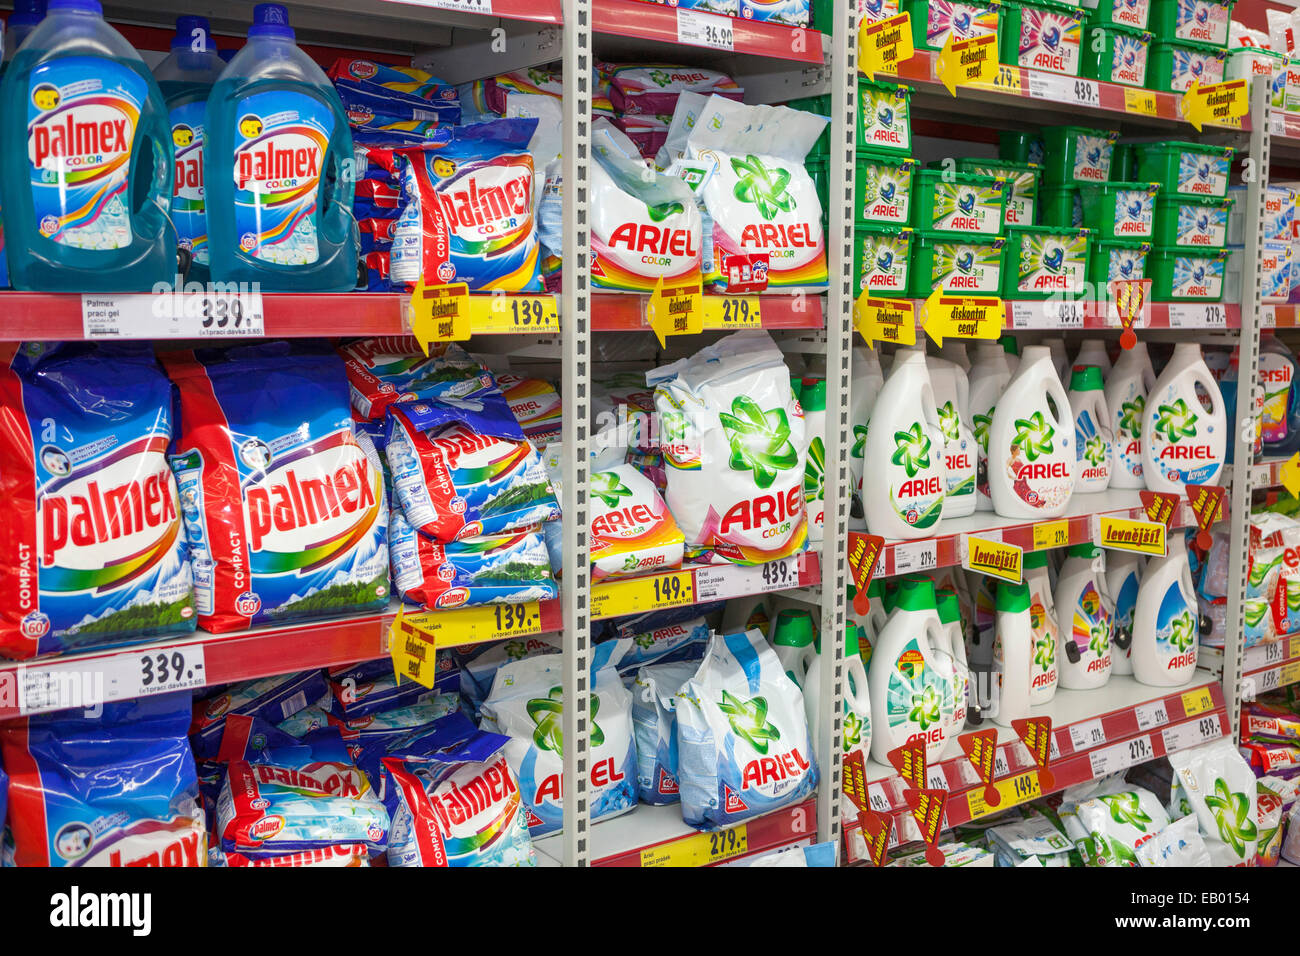 Ariel Palmex Waschpulver in Regalen Supermarkt, Prag Tschechische Republik Europa Stockfoto